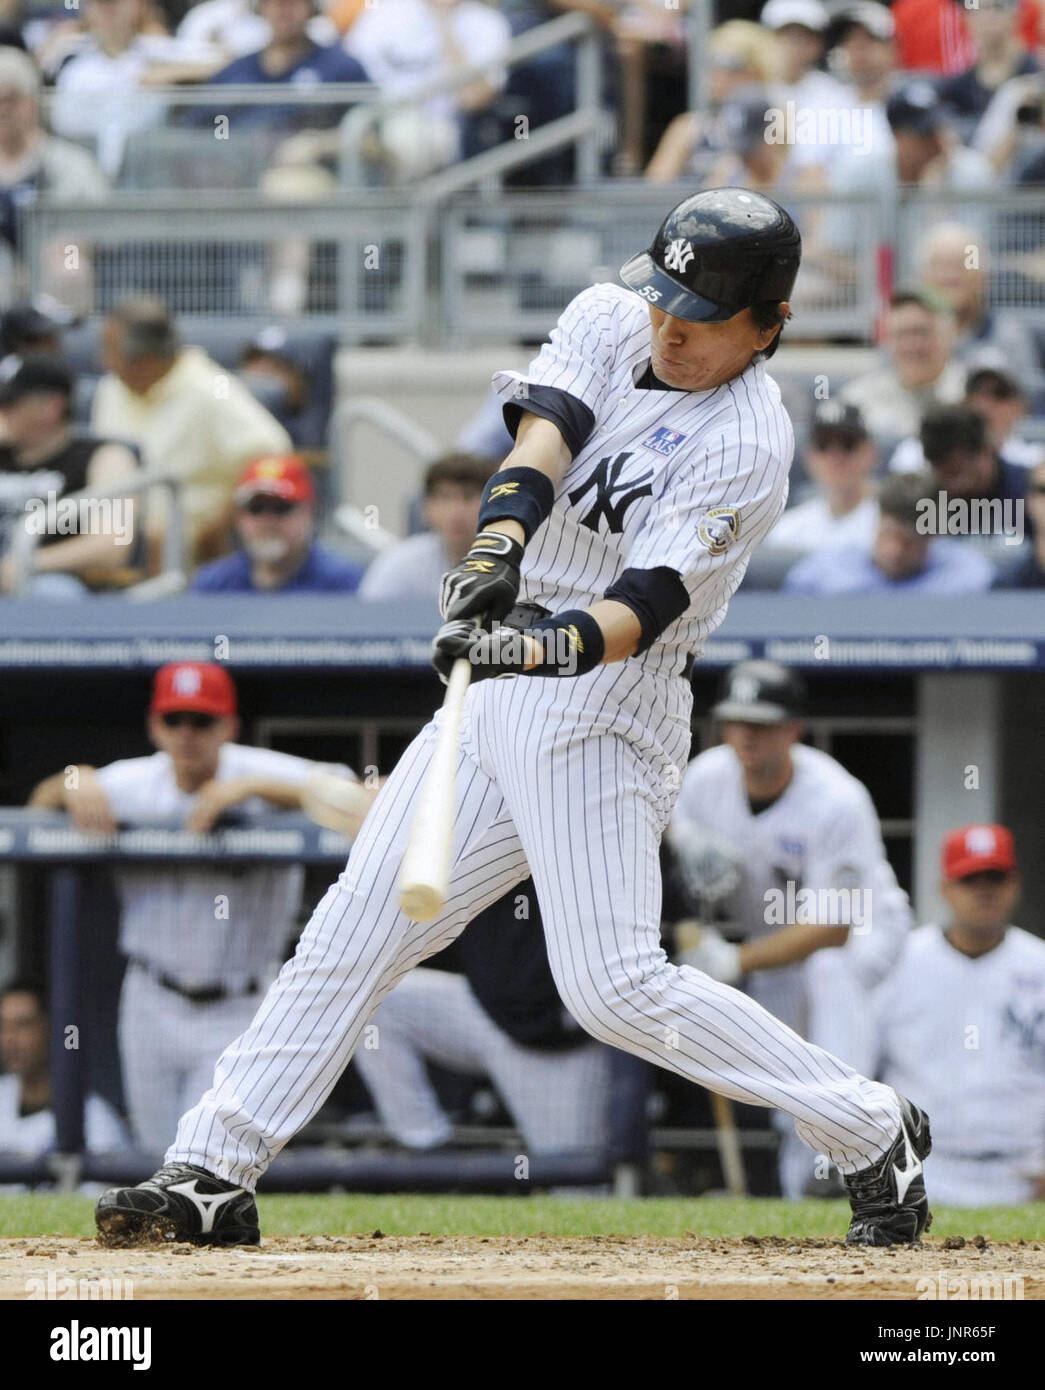 Nueva York, Estados Unidos - New York Yankees bateador designado Hideki  Matsui bateó un solo home run en la segunda entradas en un partido contra  los Blue Jays de Toronto en el